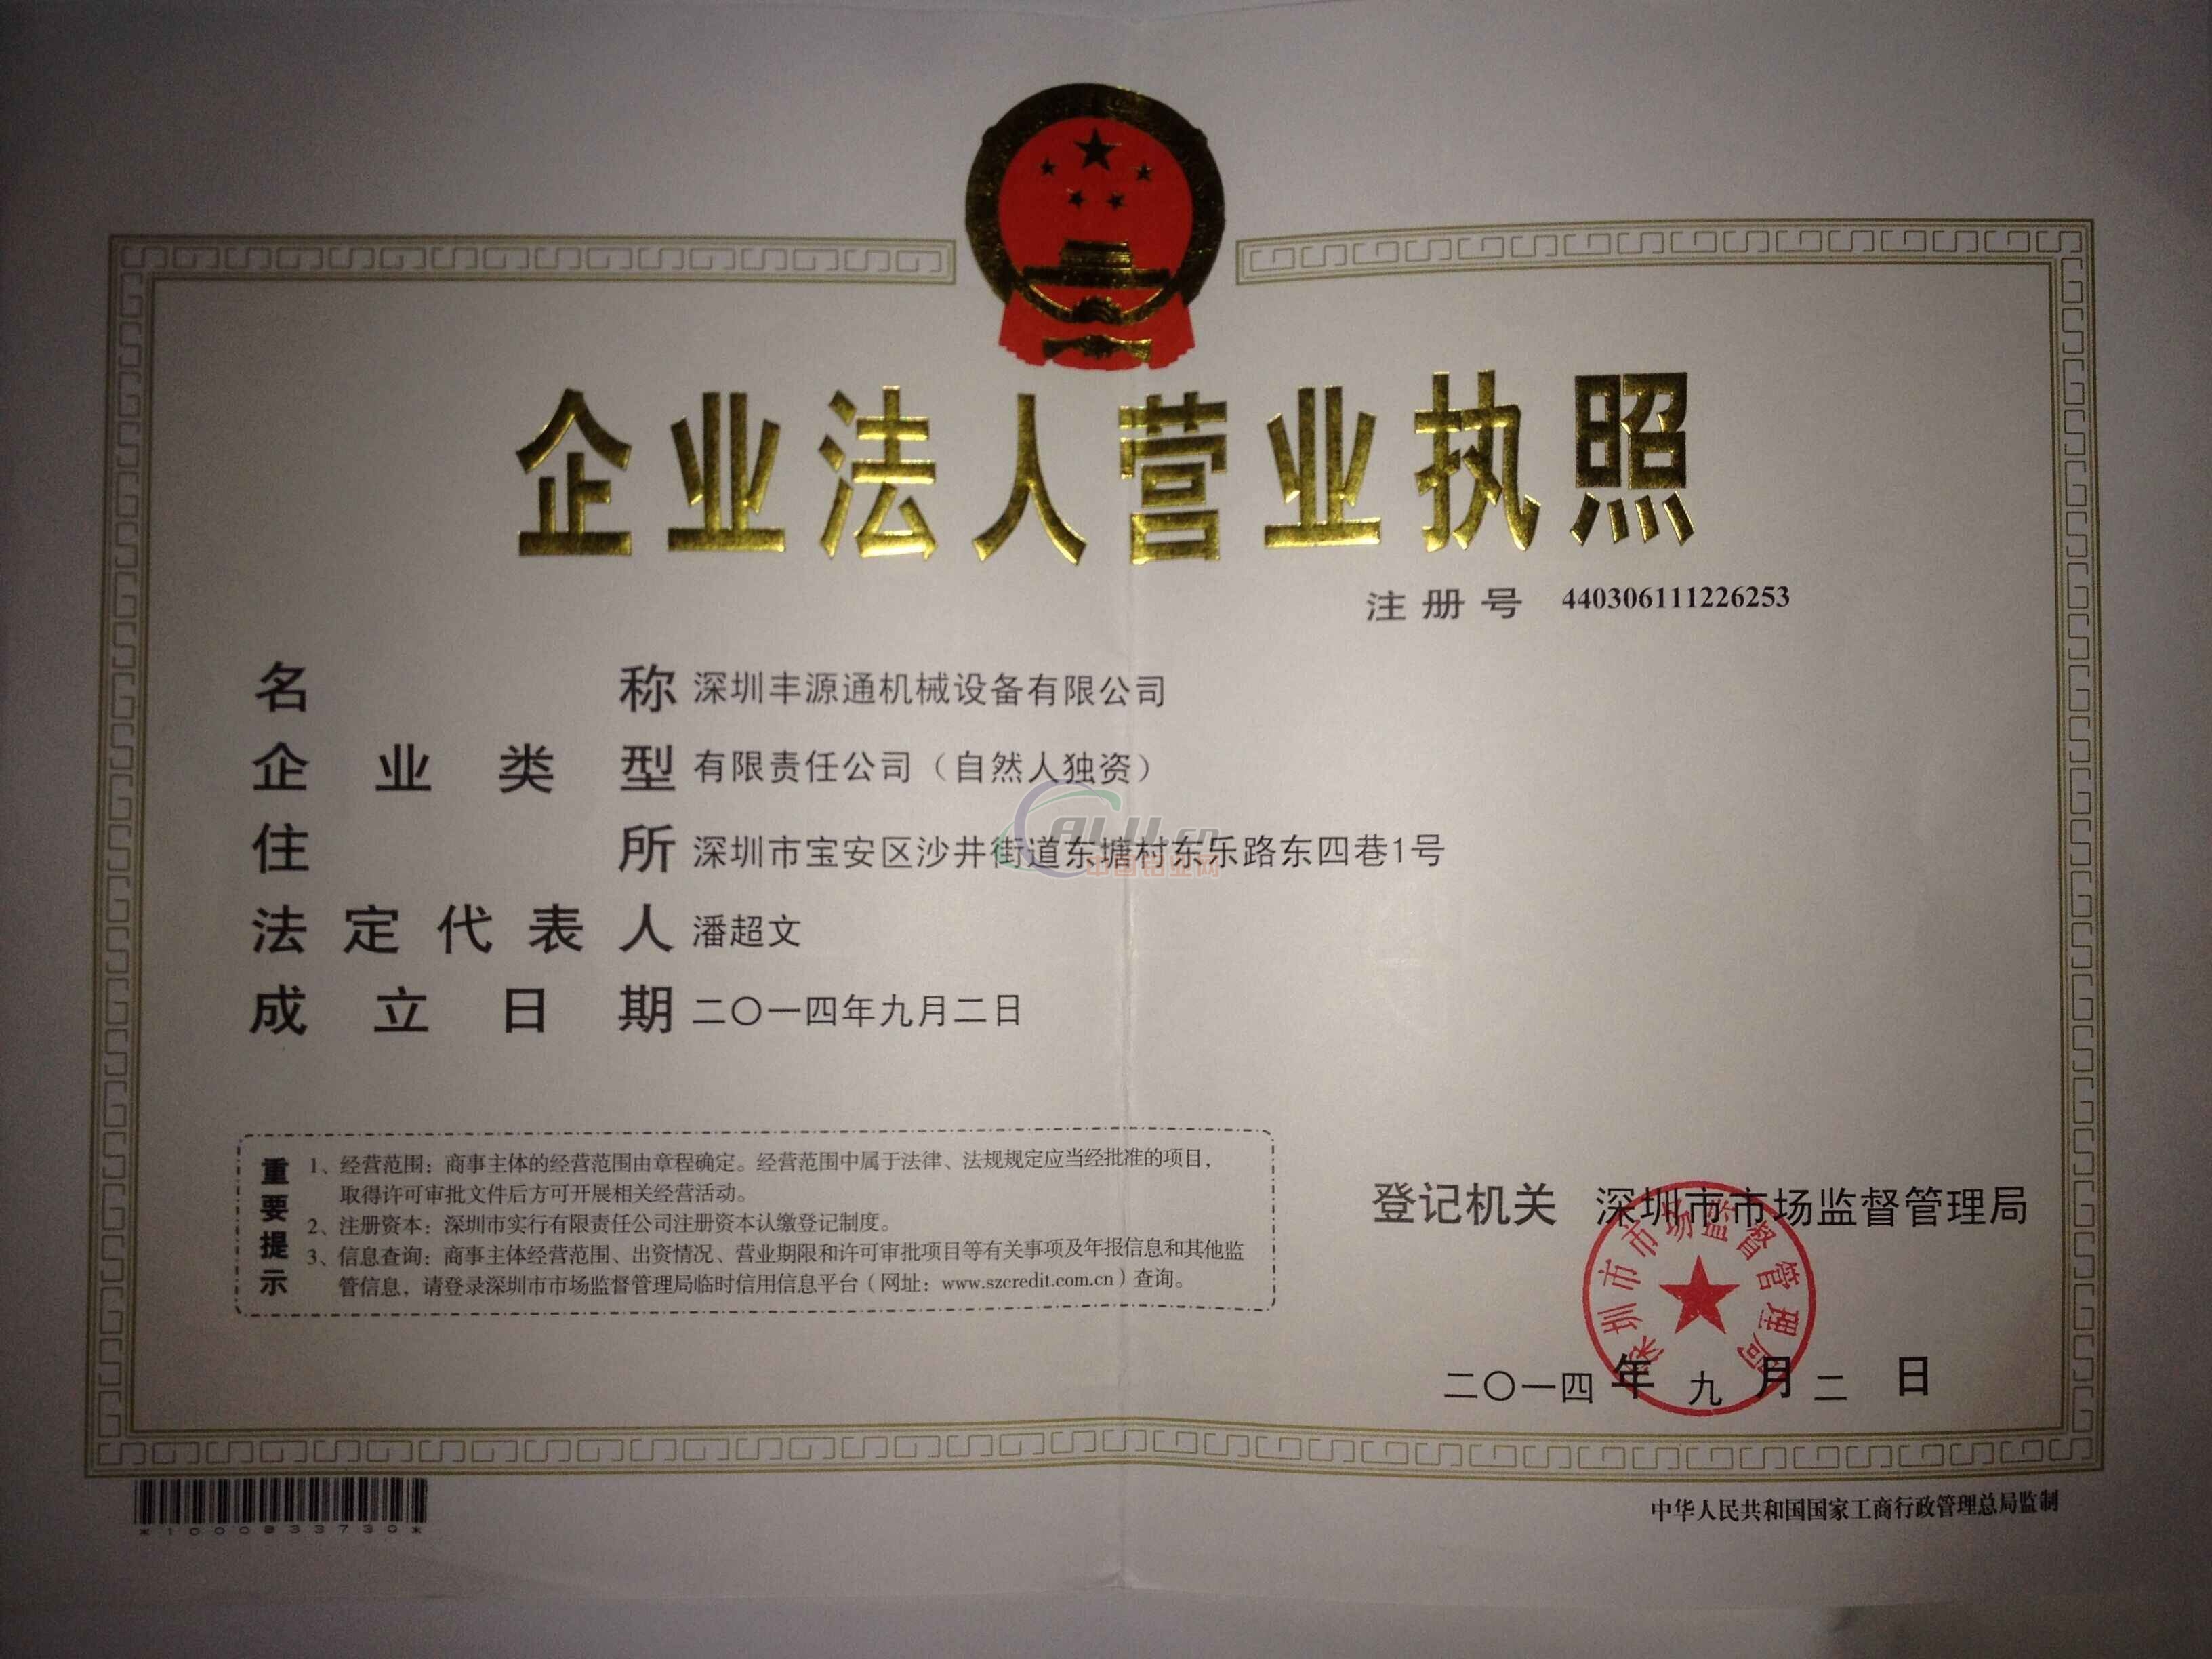 登记机关:深圳市市场监督管理局 法人代表:潘超文 注册资本